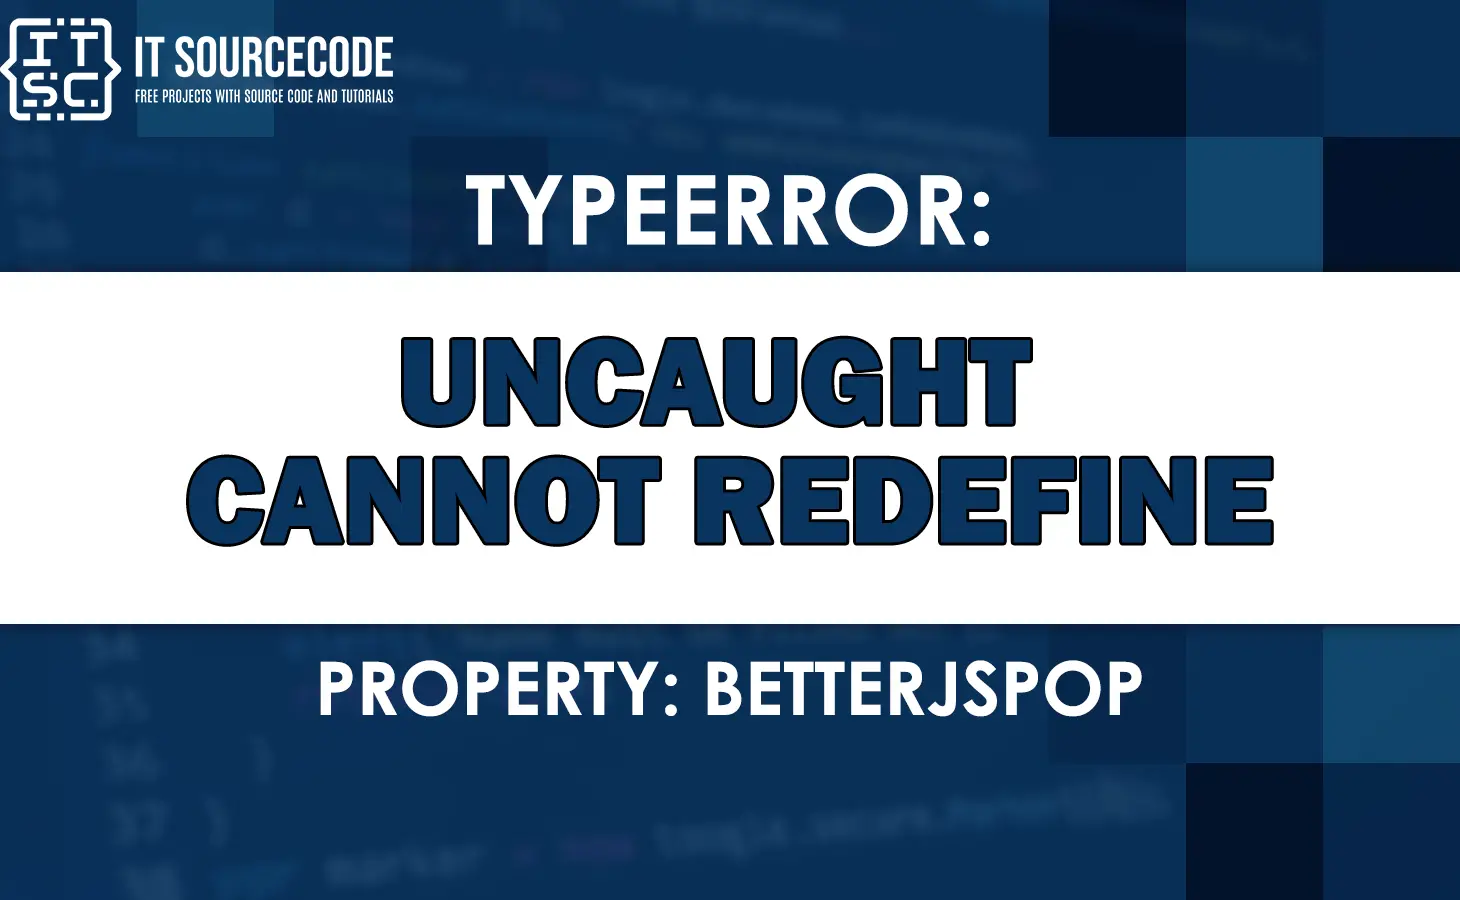 Uncaught typeerror cannot redefine property betterjspop